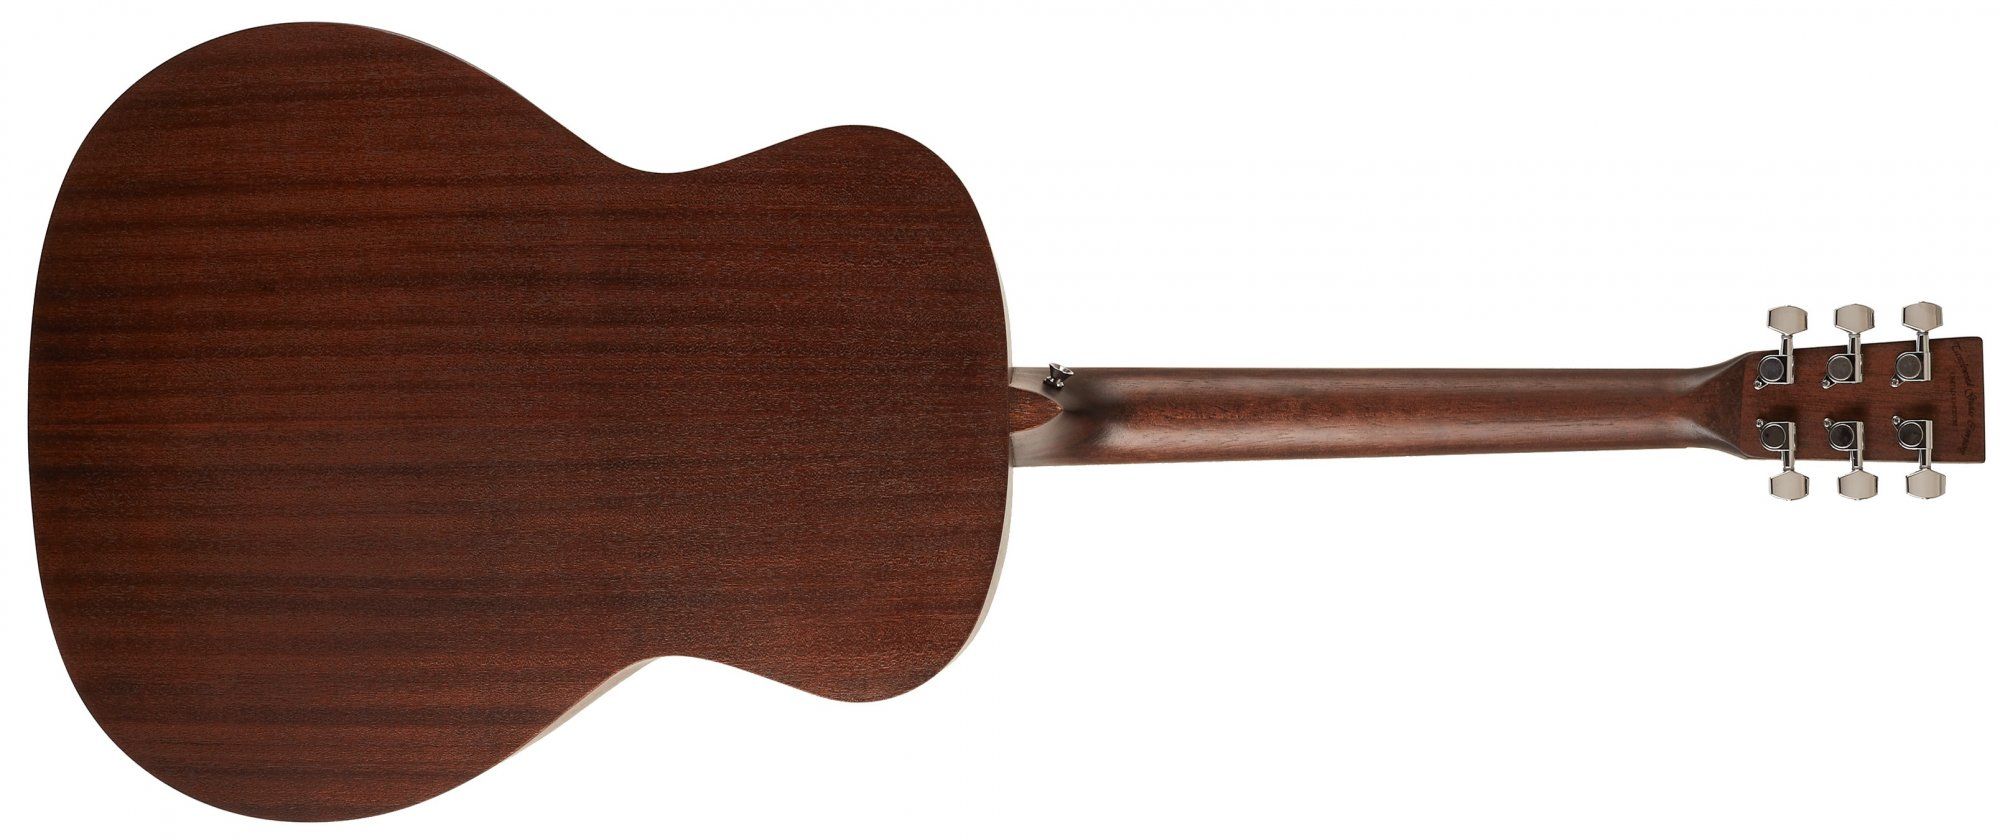  gyönyörű természetes akusztikus gitár Tanglewood TWCR szabványos menzúra rendszeres játék gitár leckék matt felületkezelés nyitott mechanika rétegelt test retro blues gitár